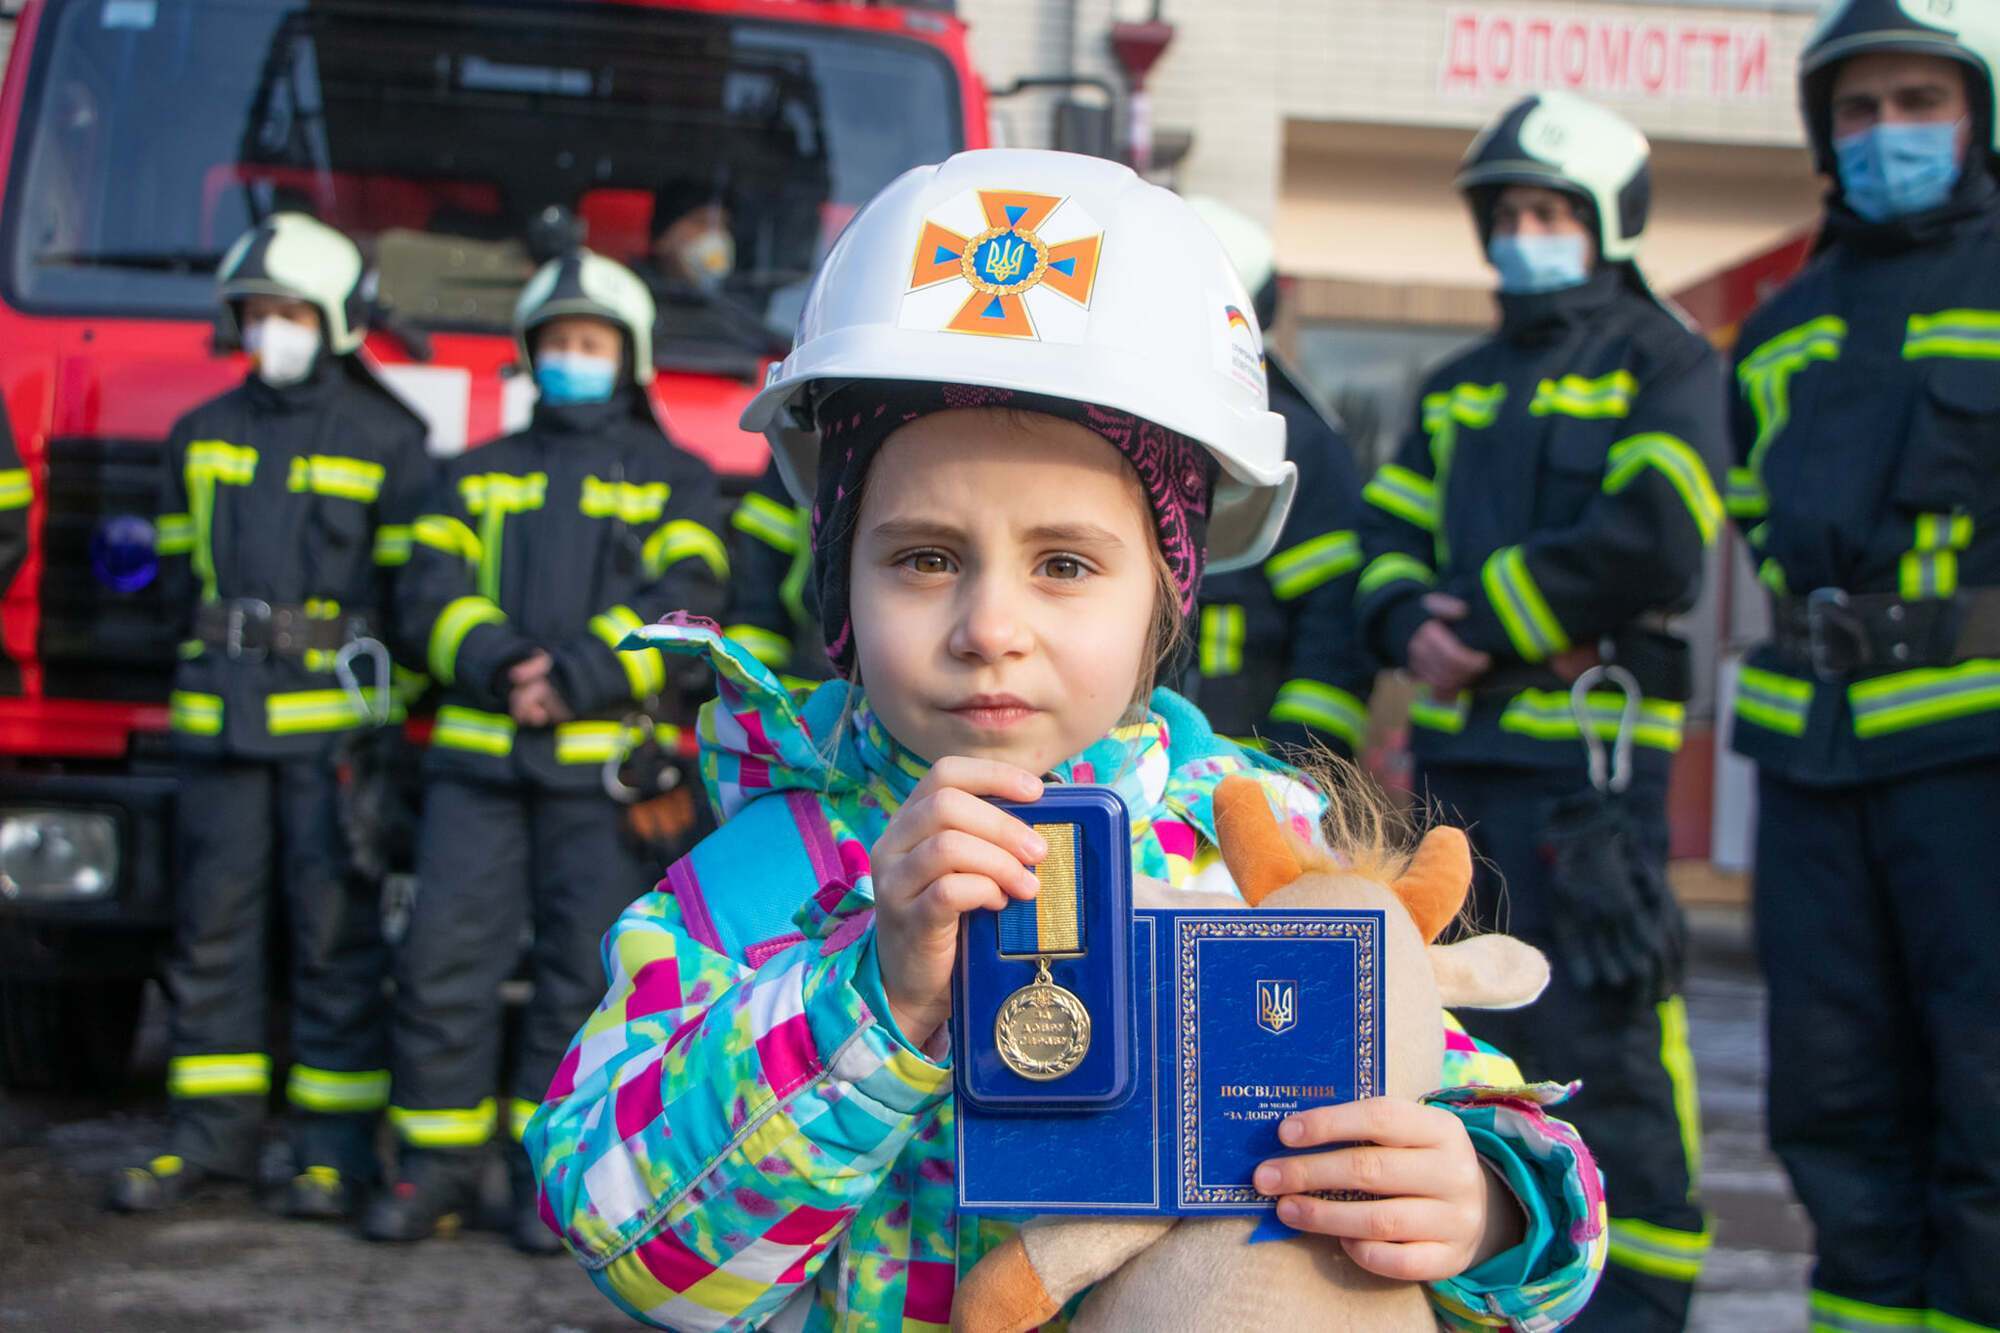 Пожарники наградили девочку орденом.